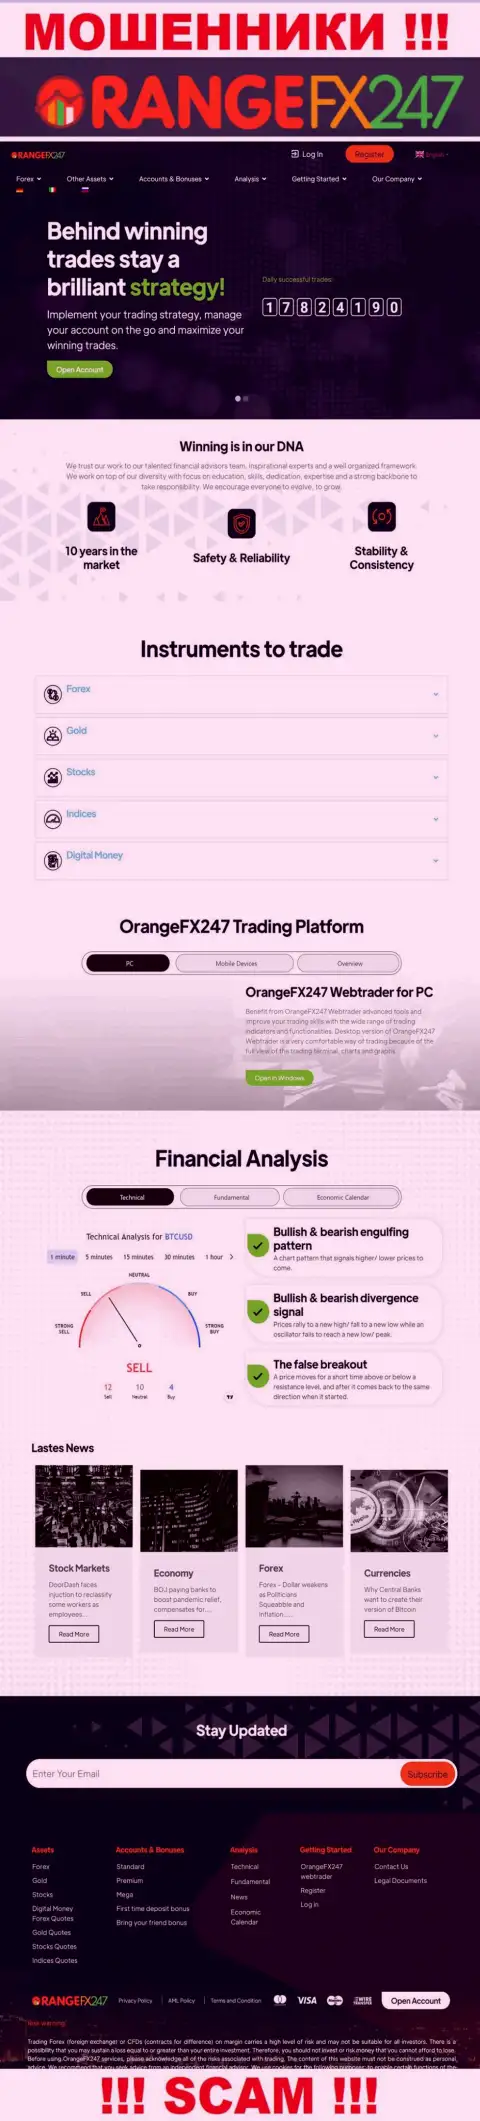 Главная страничка официального сайта мошенников OrangeFX247